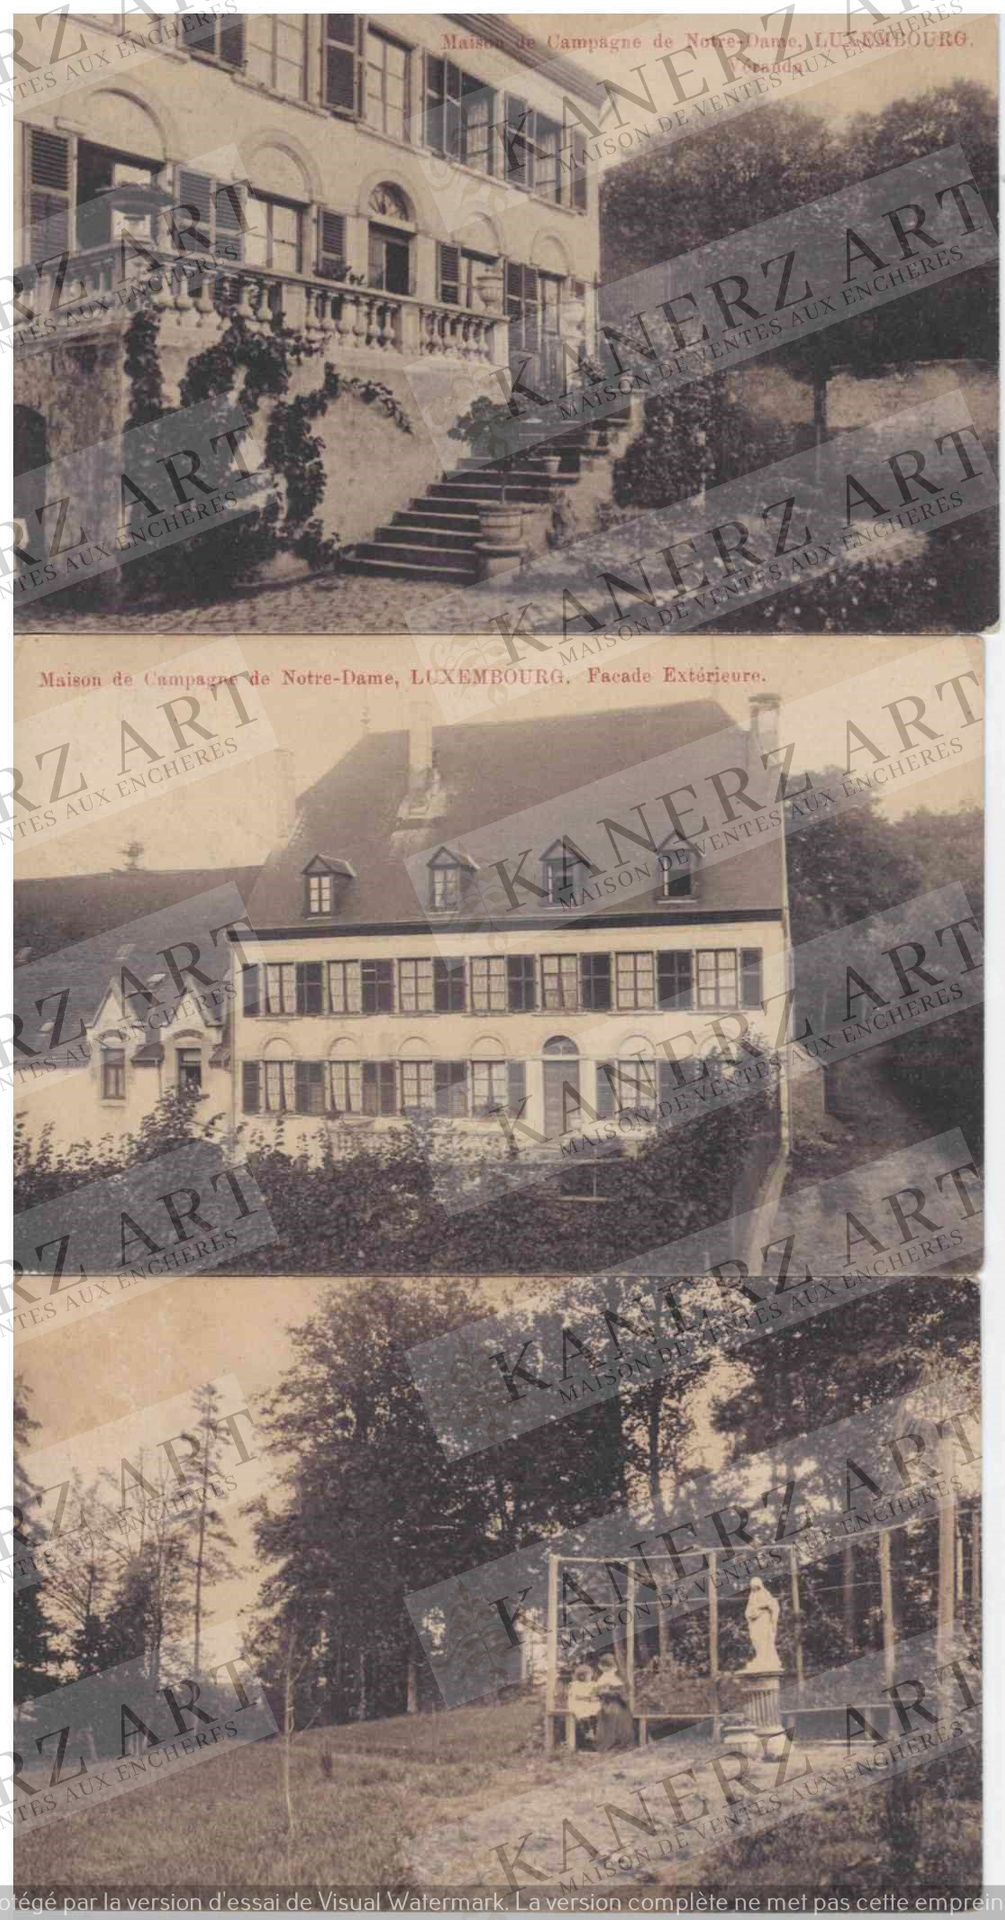 (DIVERS) 7 cartes de la Maison de campagne de Notre Damer, ca. 1910